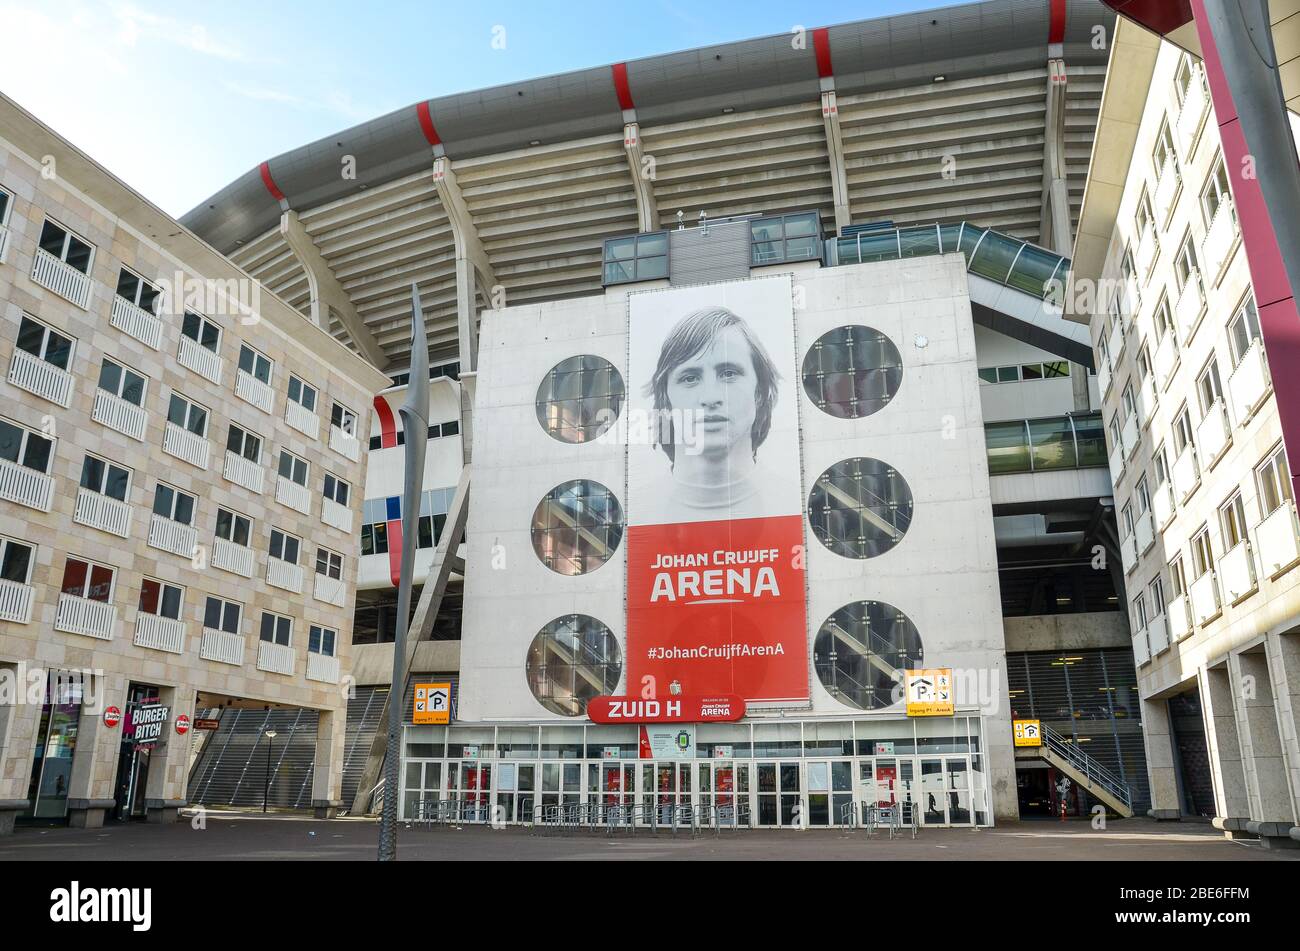 Amsterdam, Niederlande - 27. April 2019: Außenansicht der Johan Cruijff Arena vom Zuid H Eingang. Heimstadion der Ajax Amsterdam Fußballmannschaft. Bilboard des ehemaligen Spielers Cruijff auf der Arena. Stockfoto